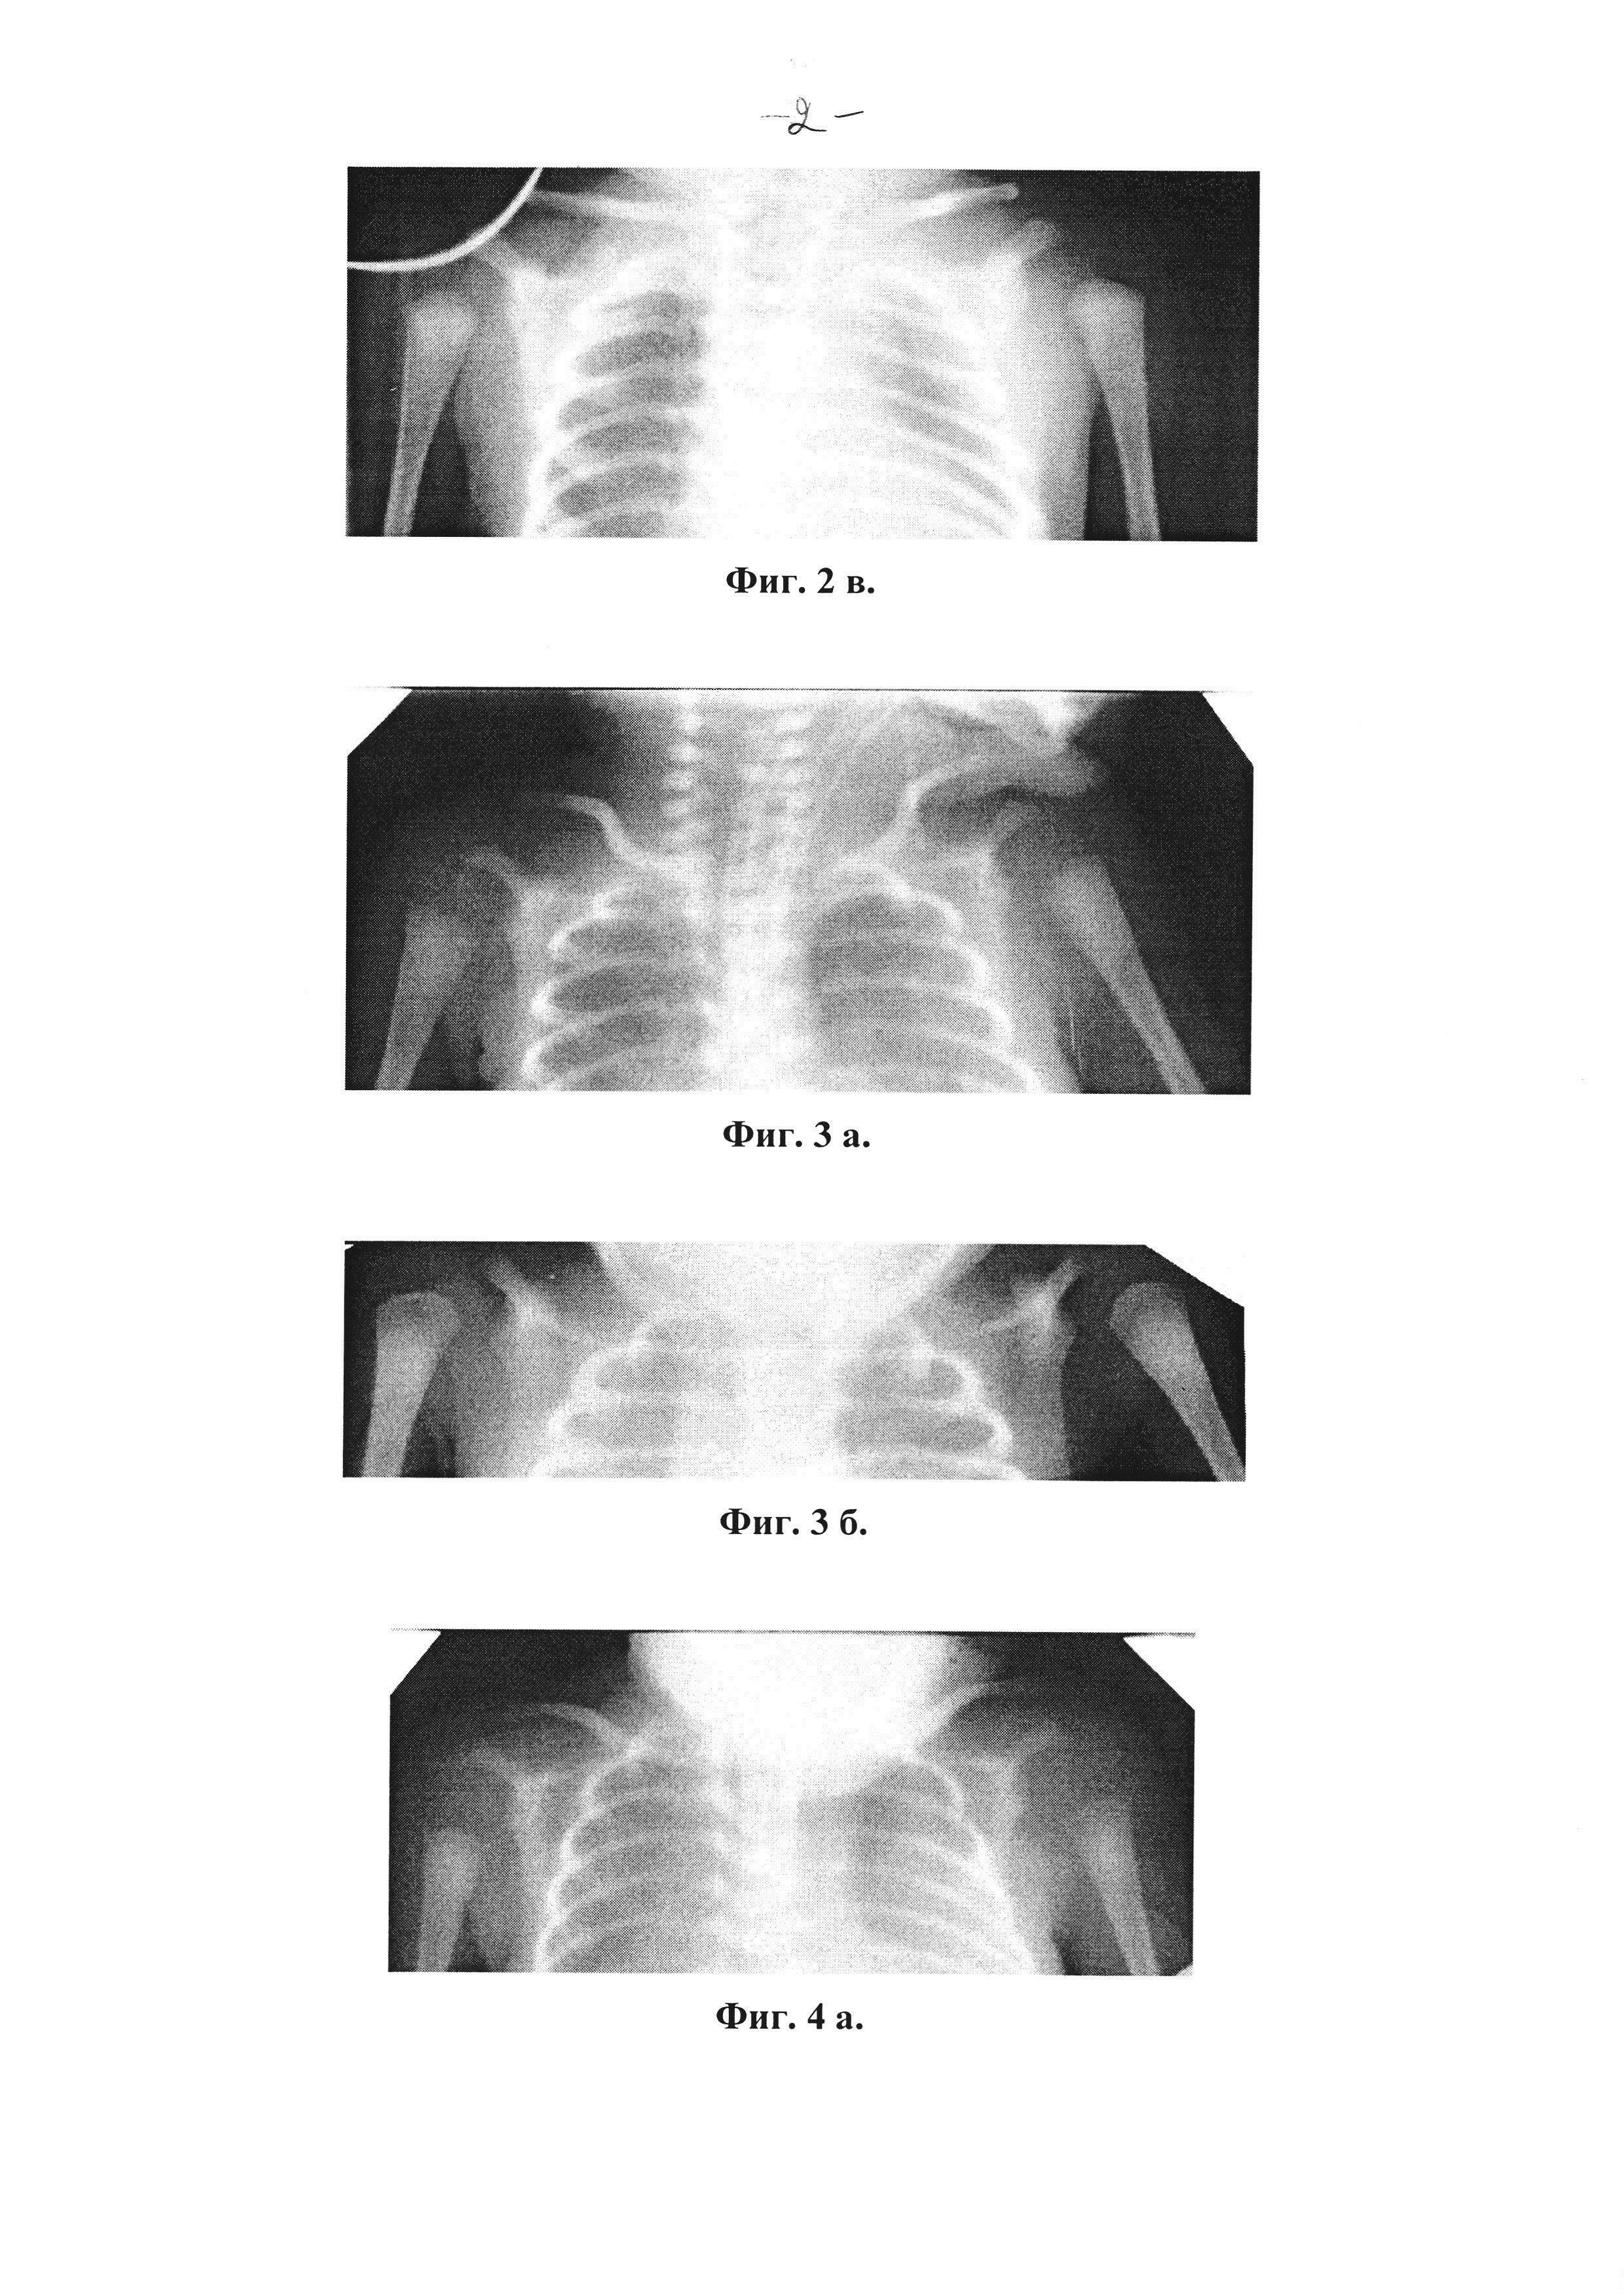 Способ рентгенологической диагностики остеопении (метаболической болезни костей) и раннего рахита у недоношенных детей